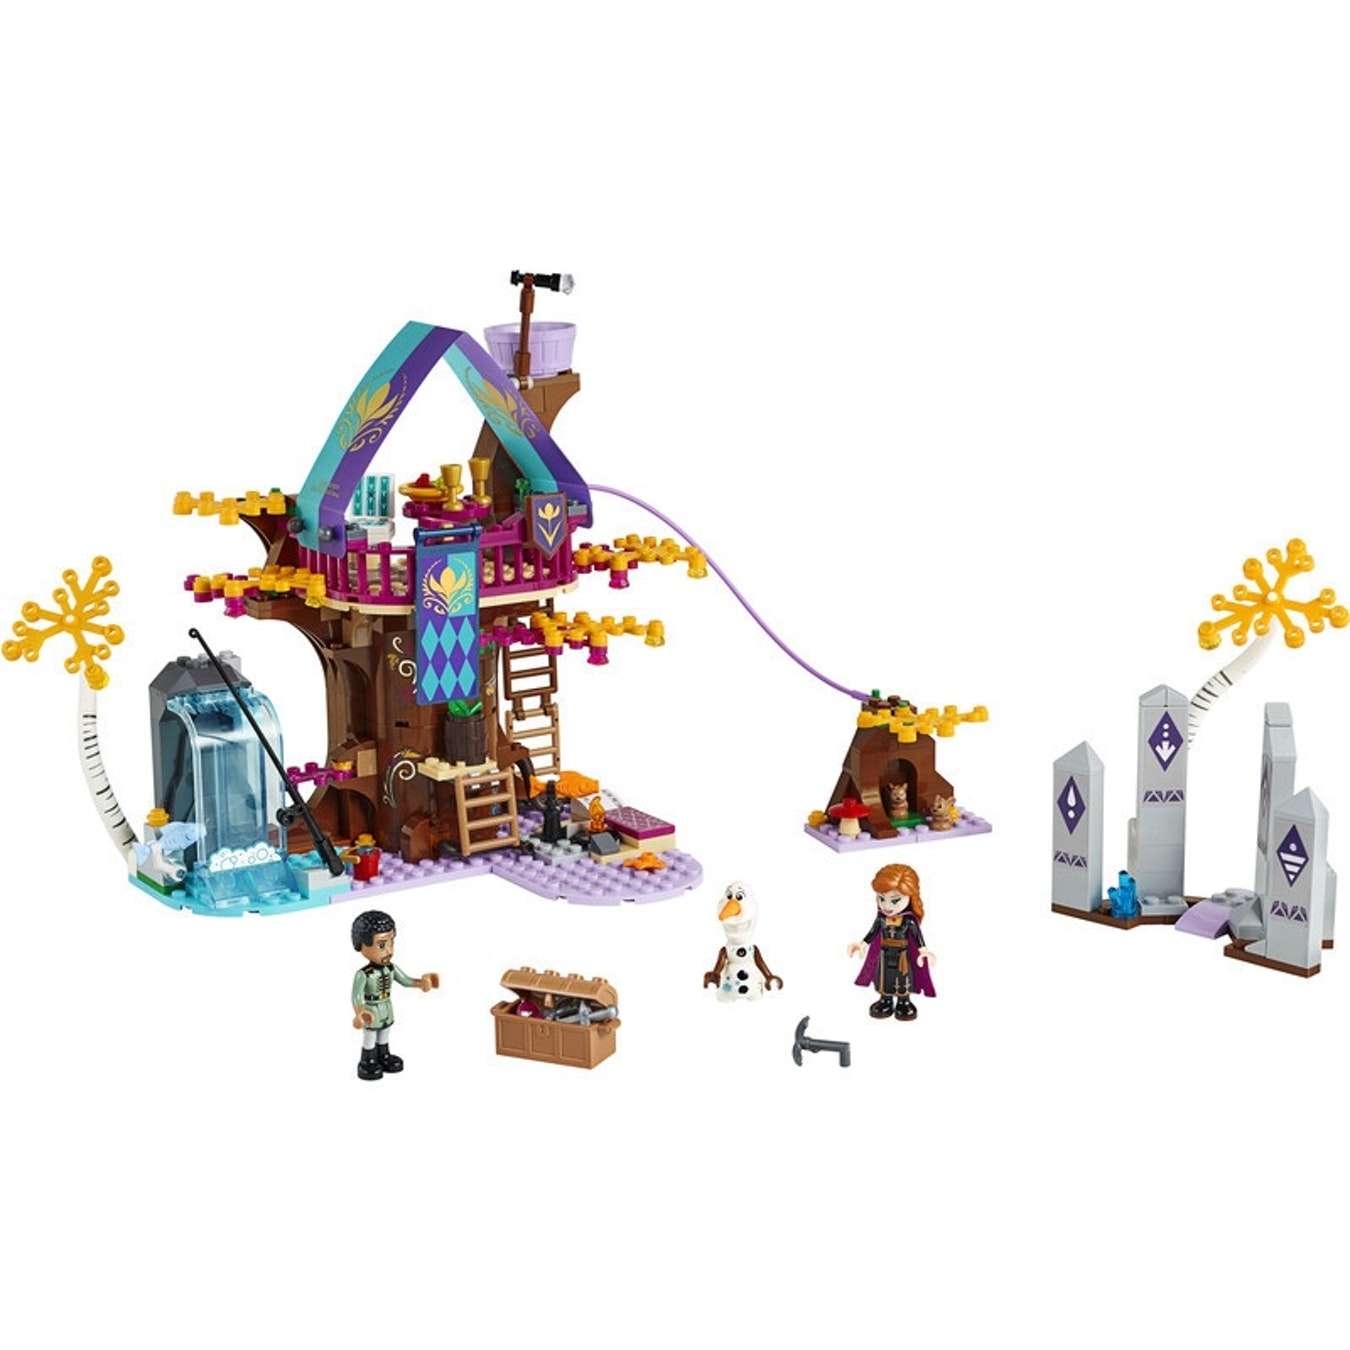 LEGO - Disney Frozen - Verzaubertes Baumhaus (41164)